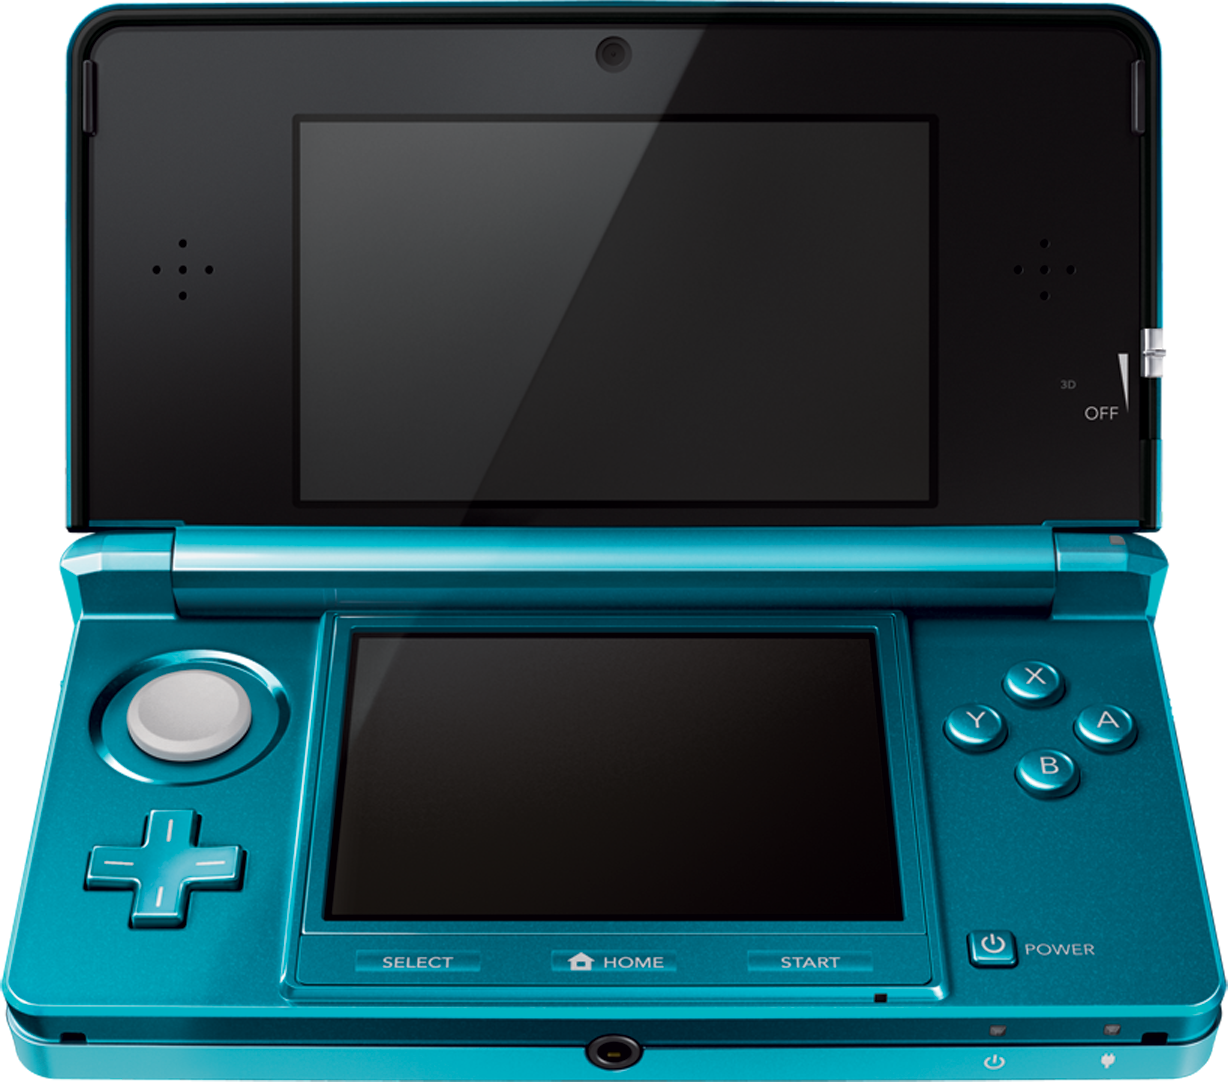 Rilis Terbaru Emulator Nintendo 3DS di PC mulai bisa memainkan game